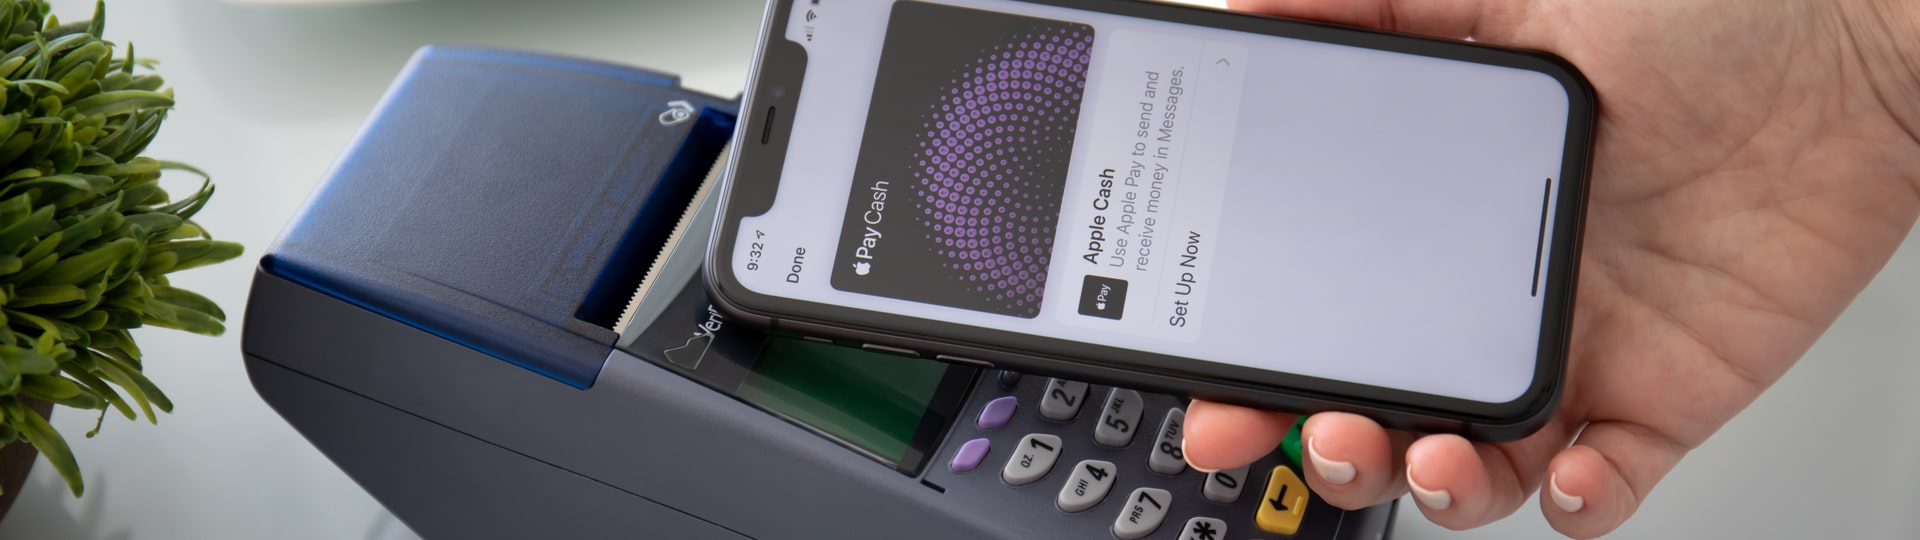 Apple představil funkci, která mění iPhony v platební terminály